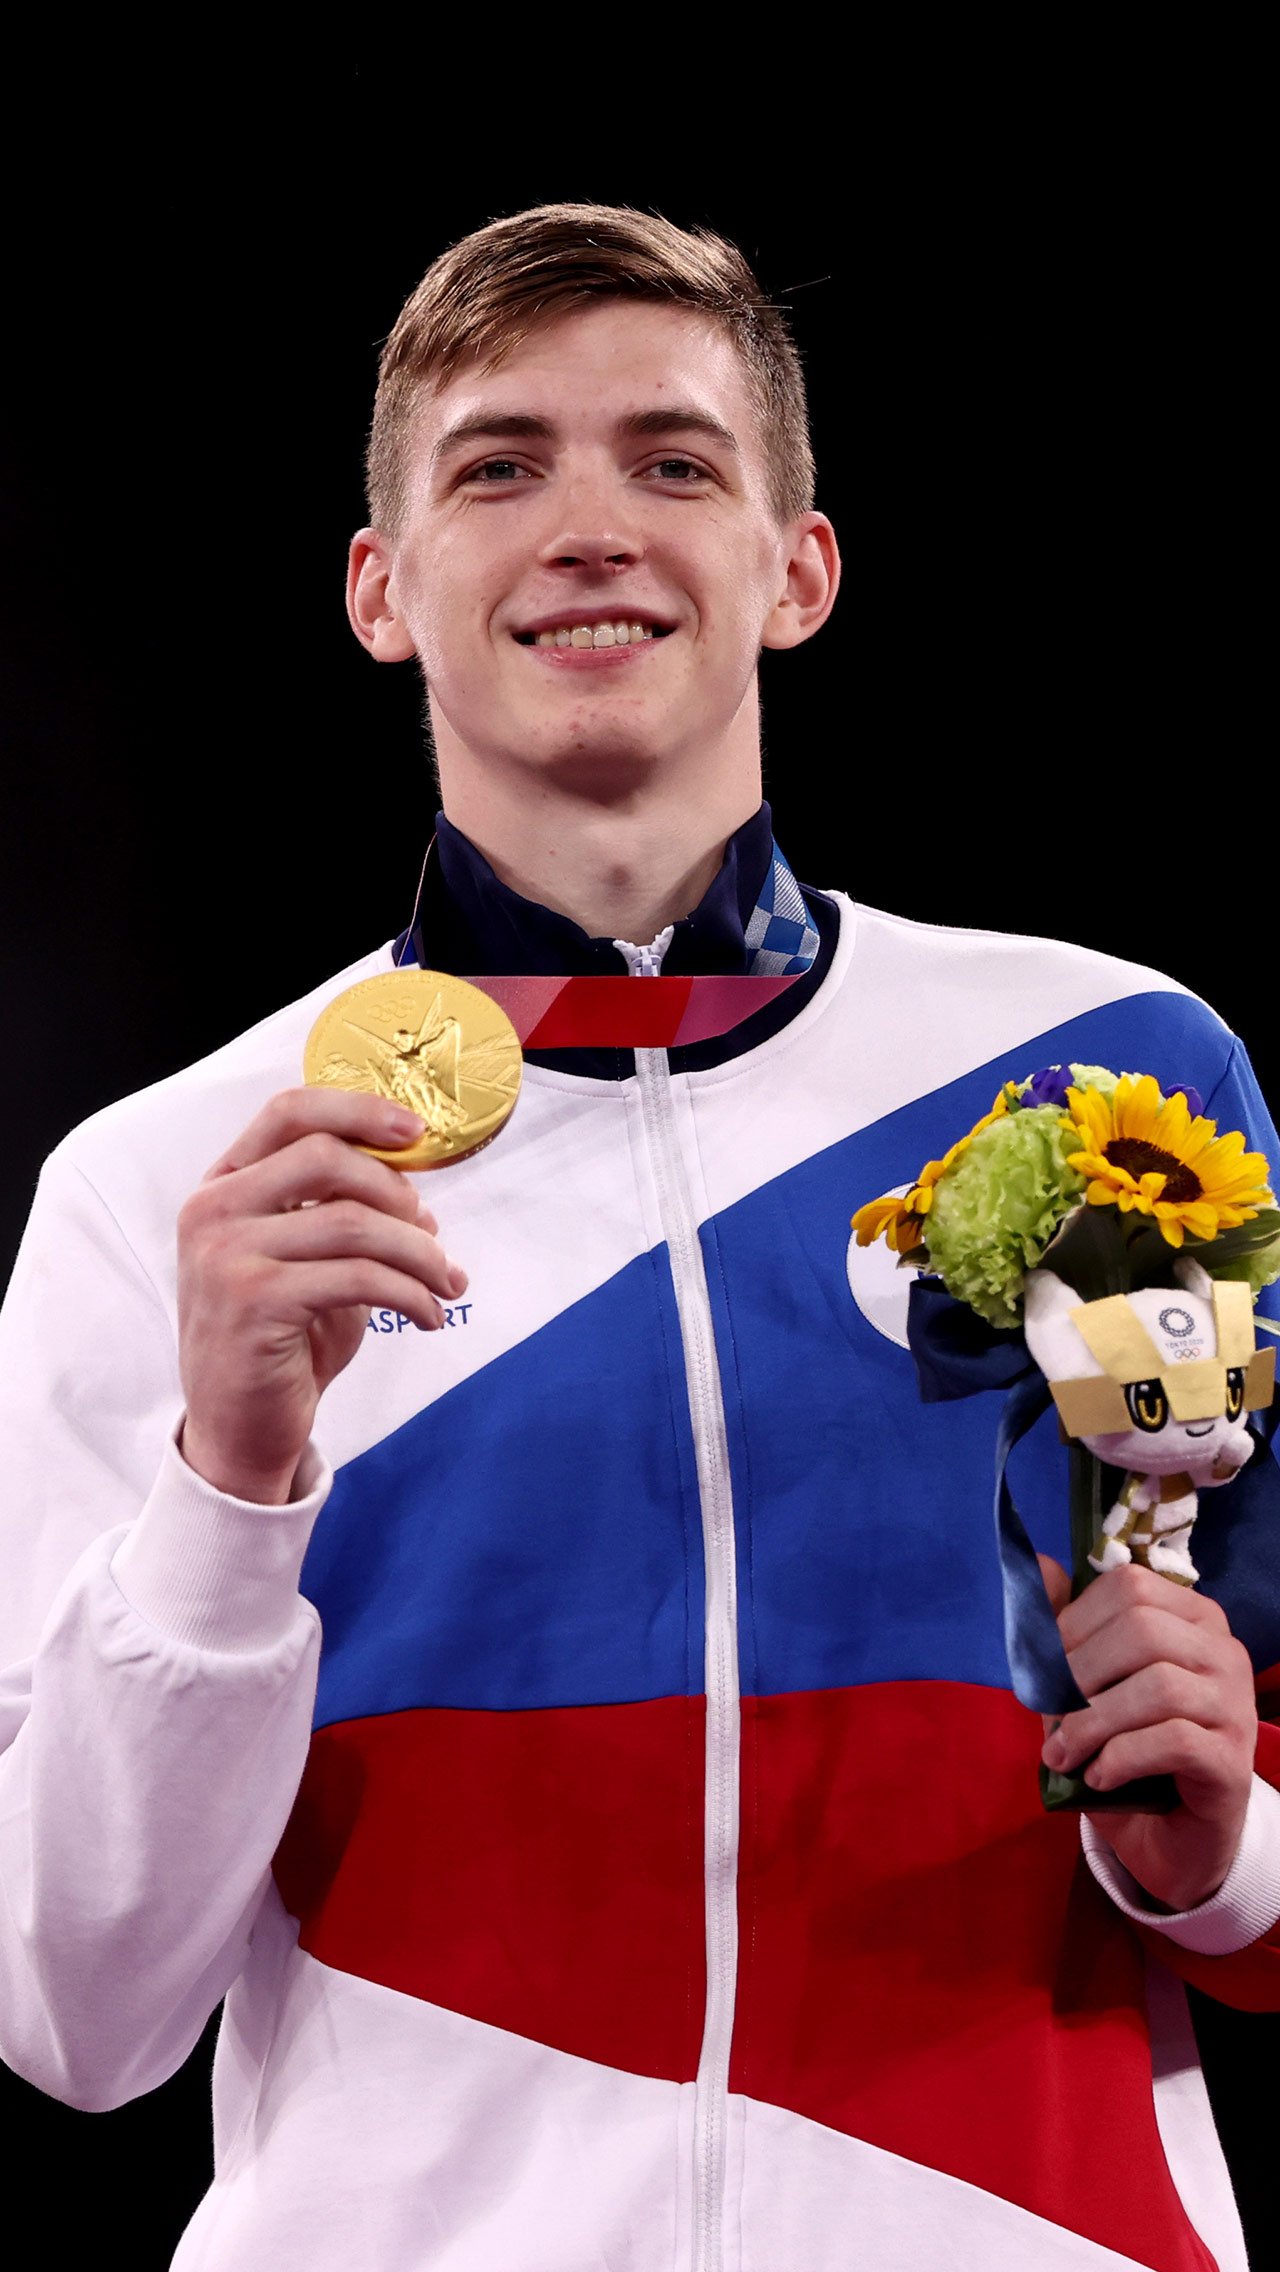 Максим Храмцов выиграл первое в истории российского спорта золото в тхэквондо. В первом поединке олимпийского турнира он получил травму, но смог дойти до финала и одержал победу со сломанной рукой!